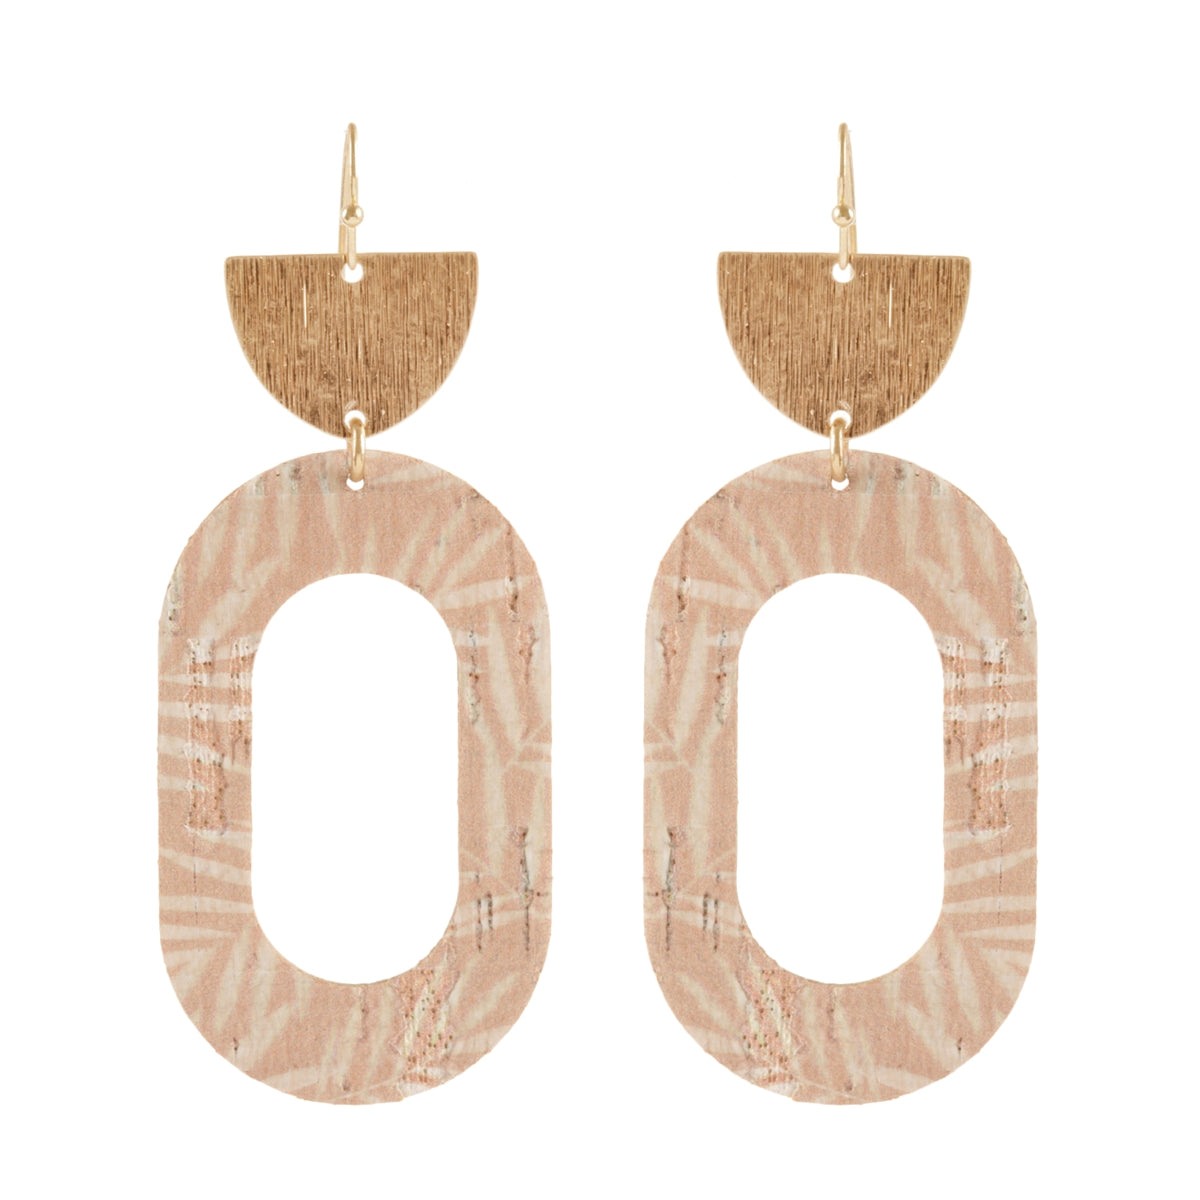 Gold Oval Cork Earrings